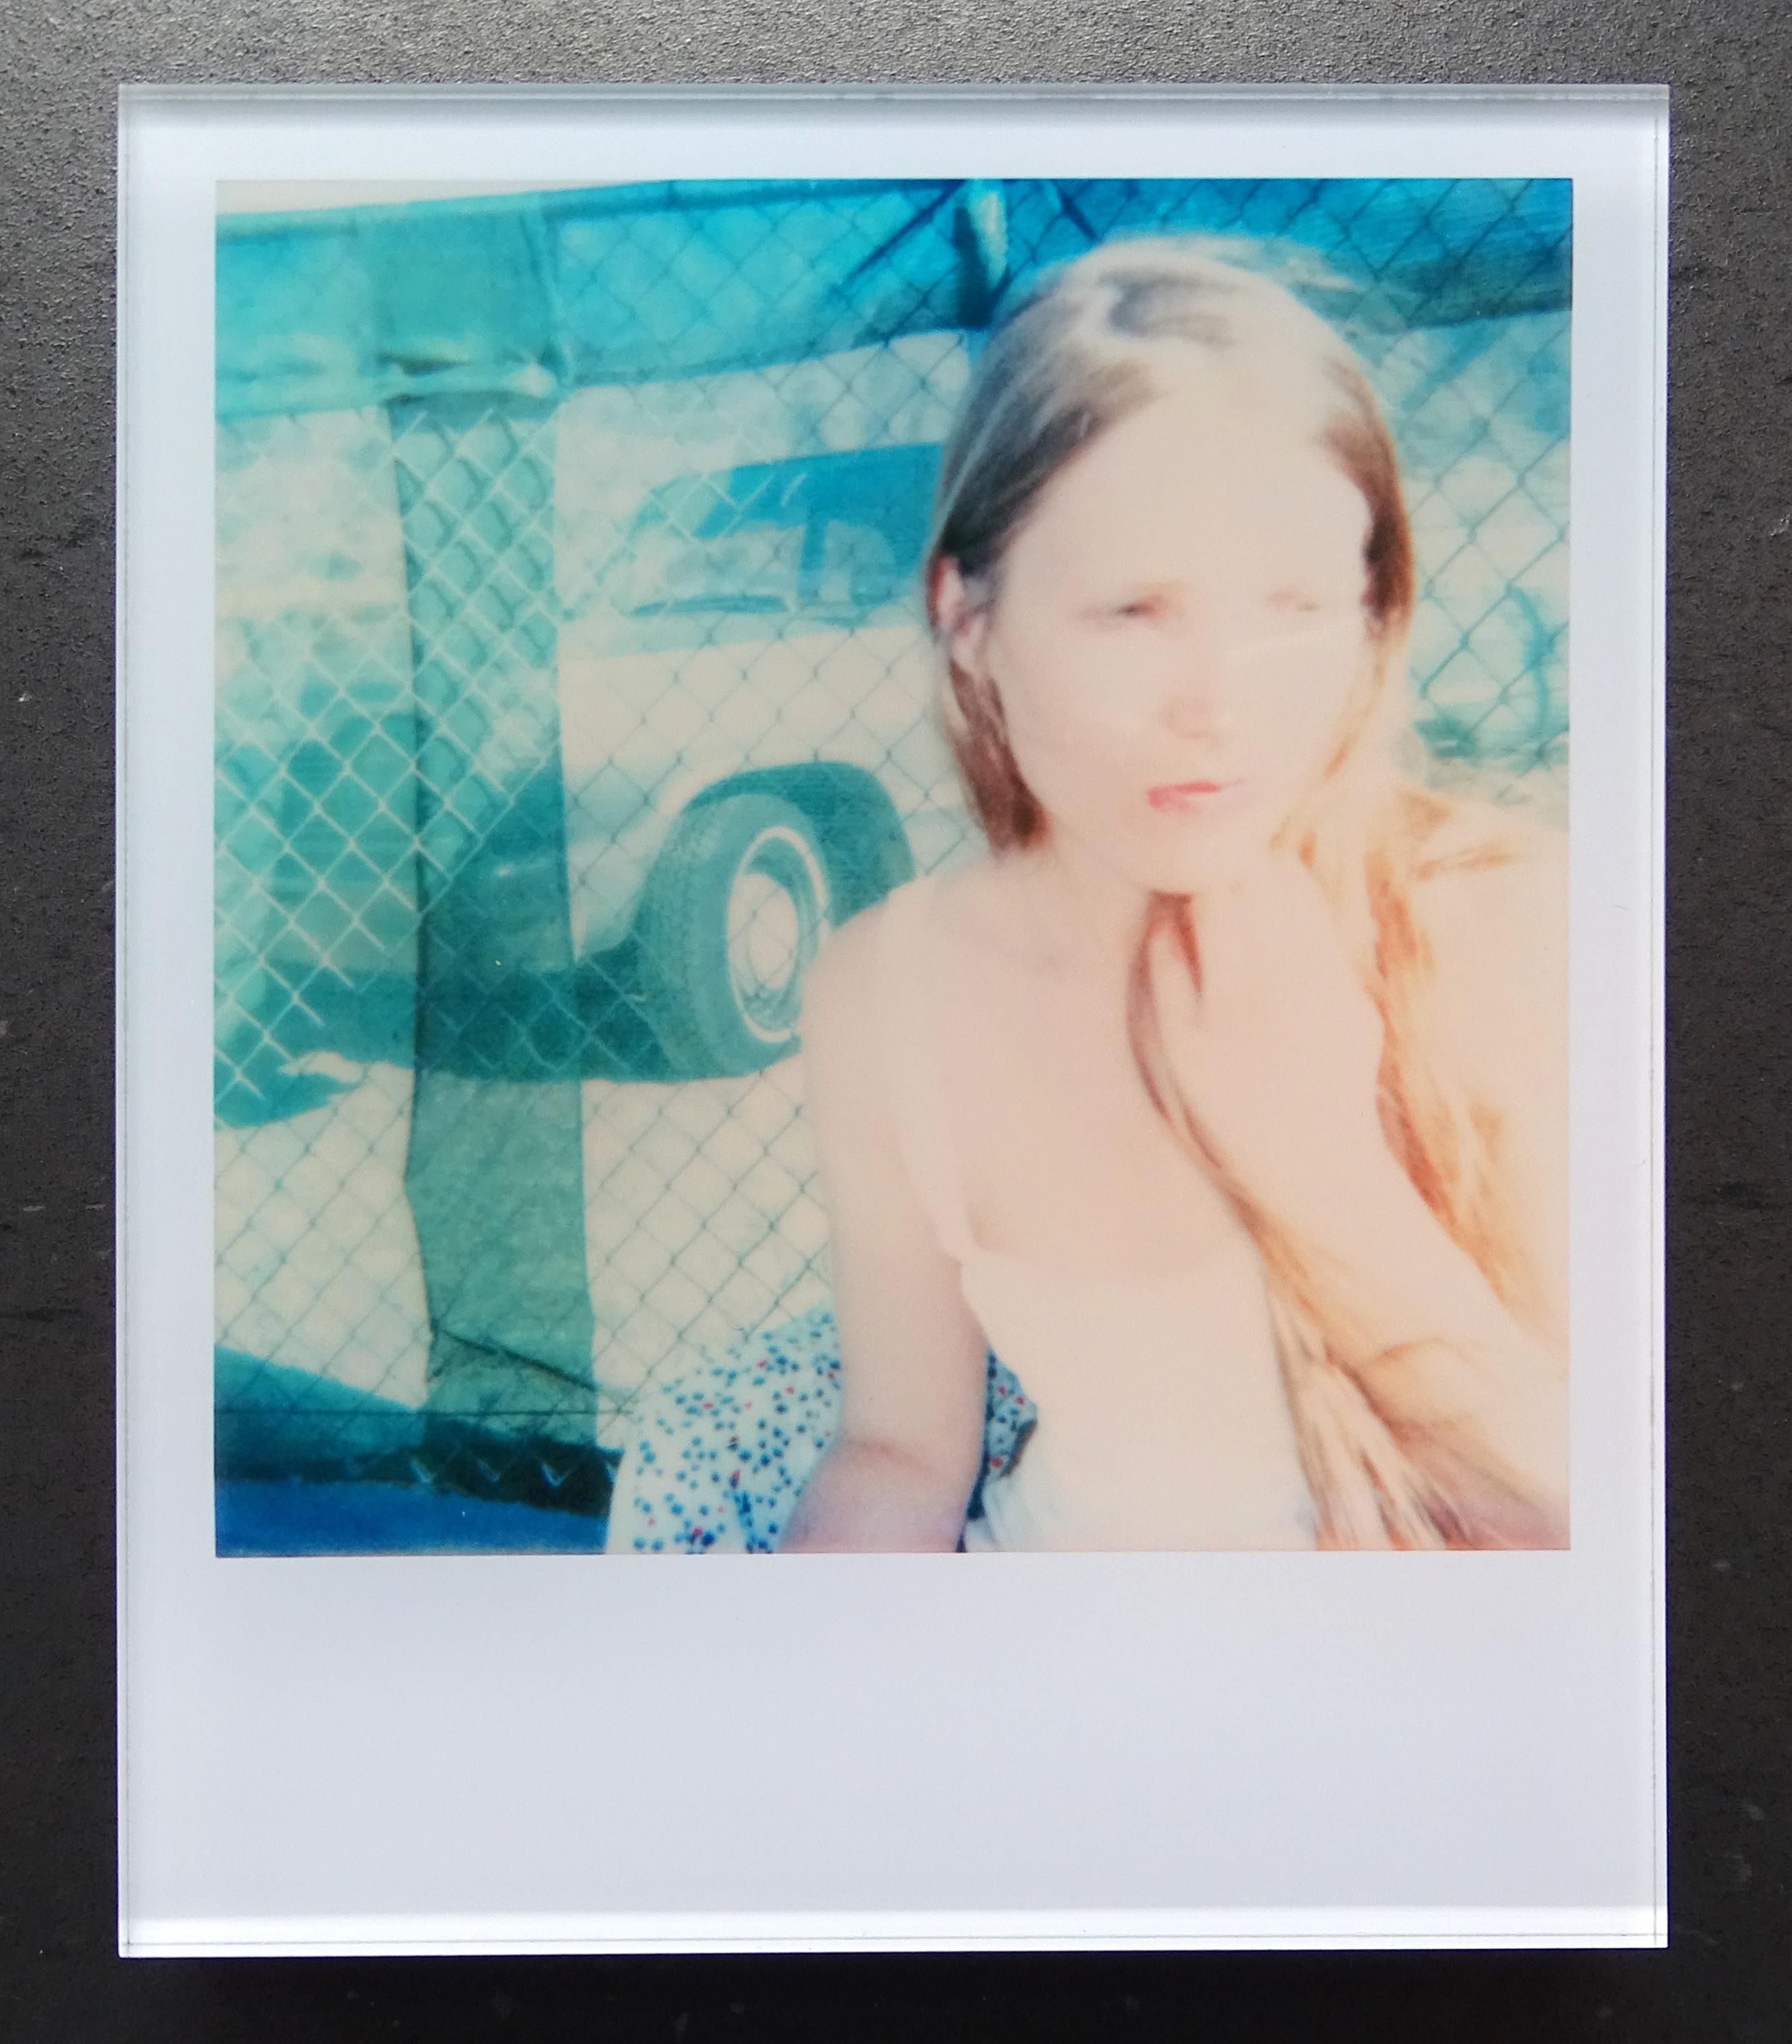 Die Minis von Stefanie Schneider
29 Day Dreams" (29 Palms, CA), 2005
verso signiert und Signaturmarke
Digitale Lambda-Farbfotografien auf der Grundlage eines Polaroids

Offene Editionen in Polaroidgröße 1999-2013
10.7 x 8,8cm (Bild